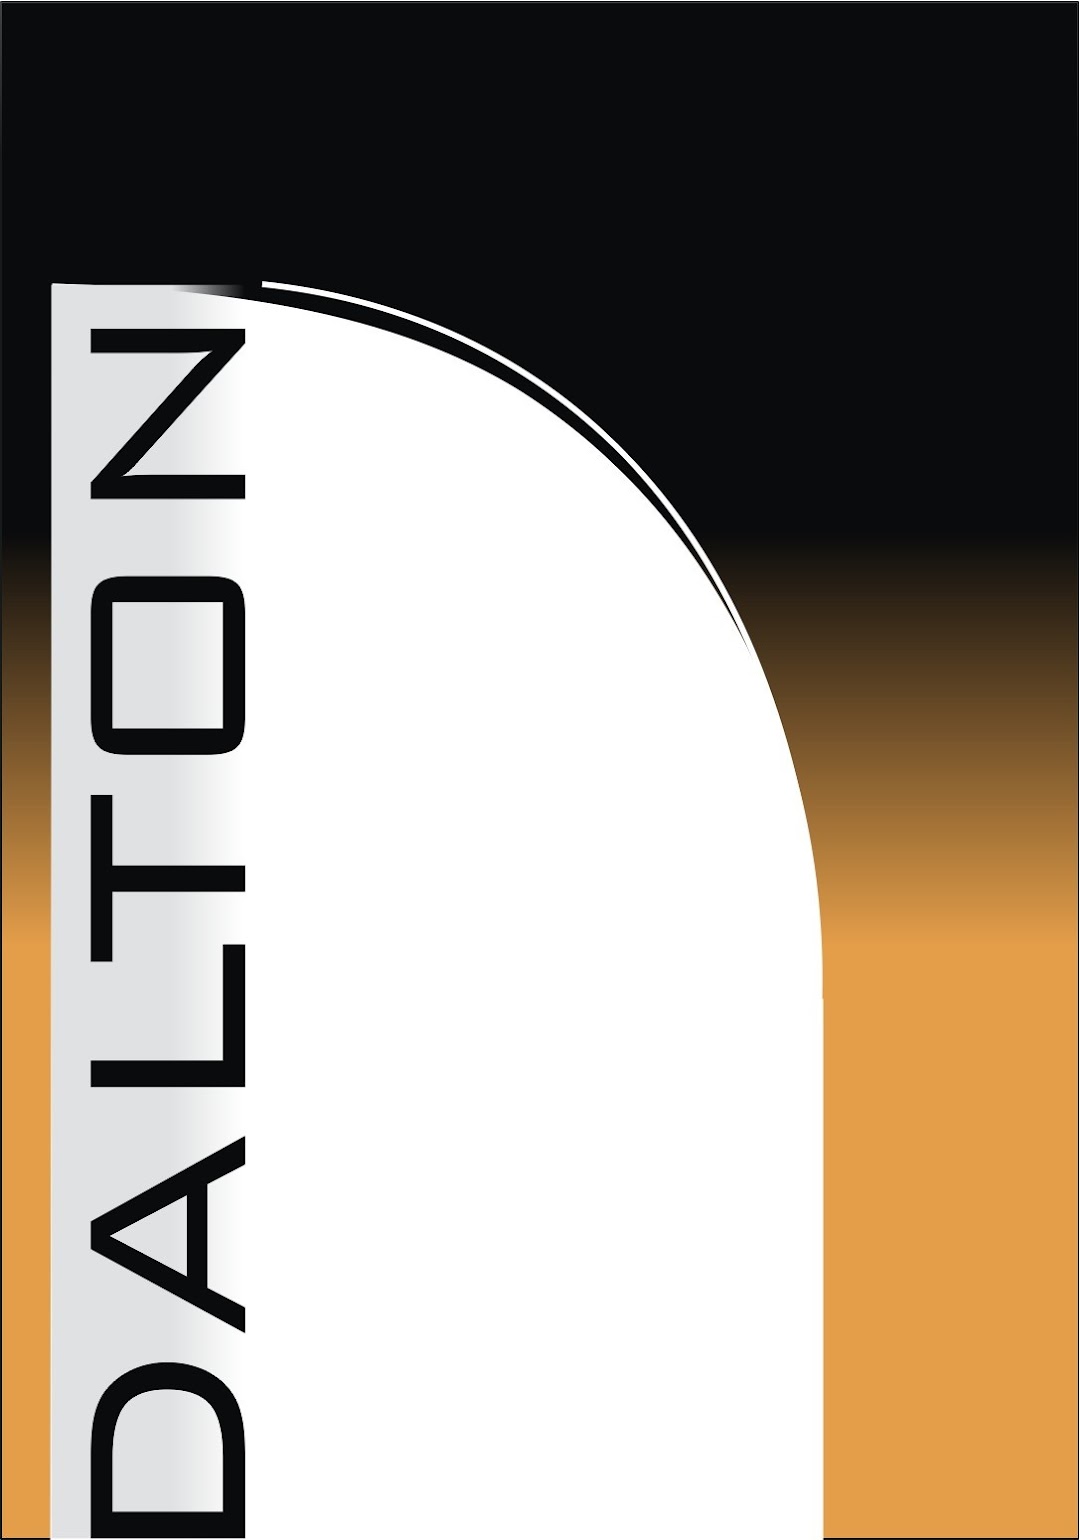 DALTON - Engenharia, Arquitetura e Urbanismo Ltda.